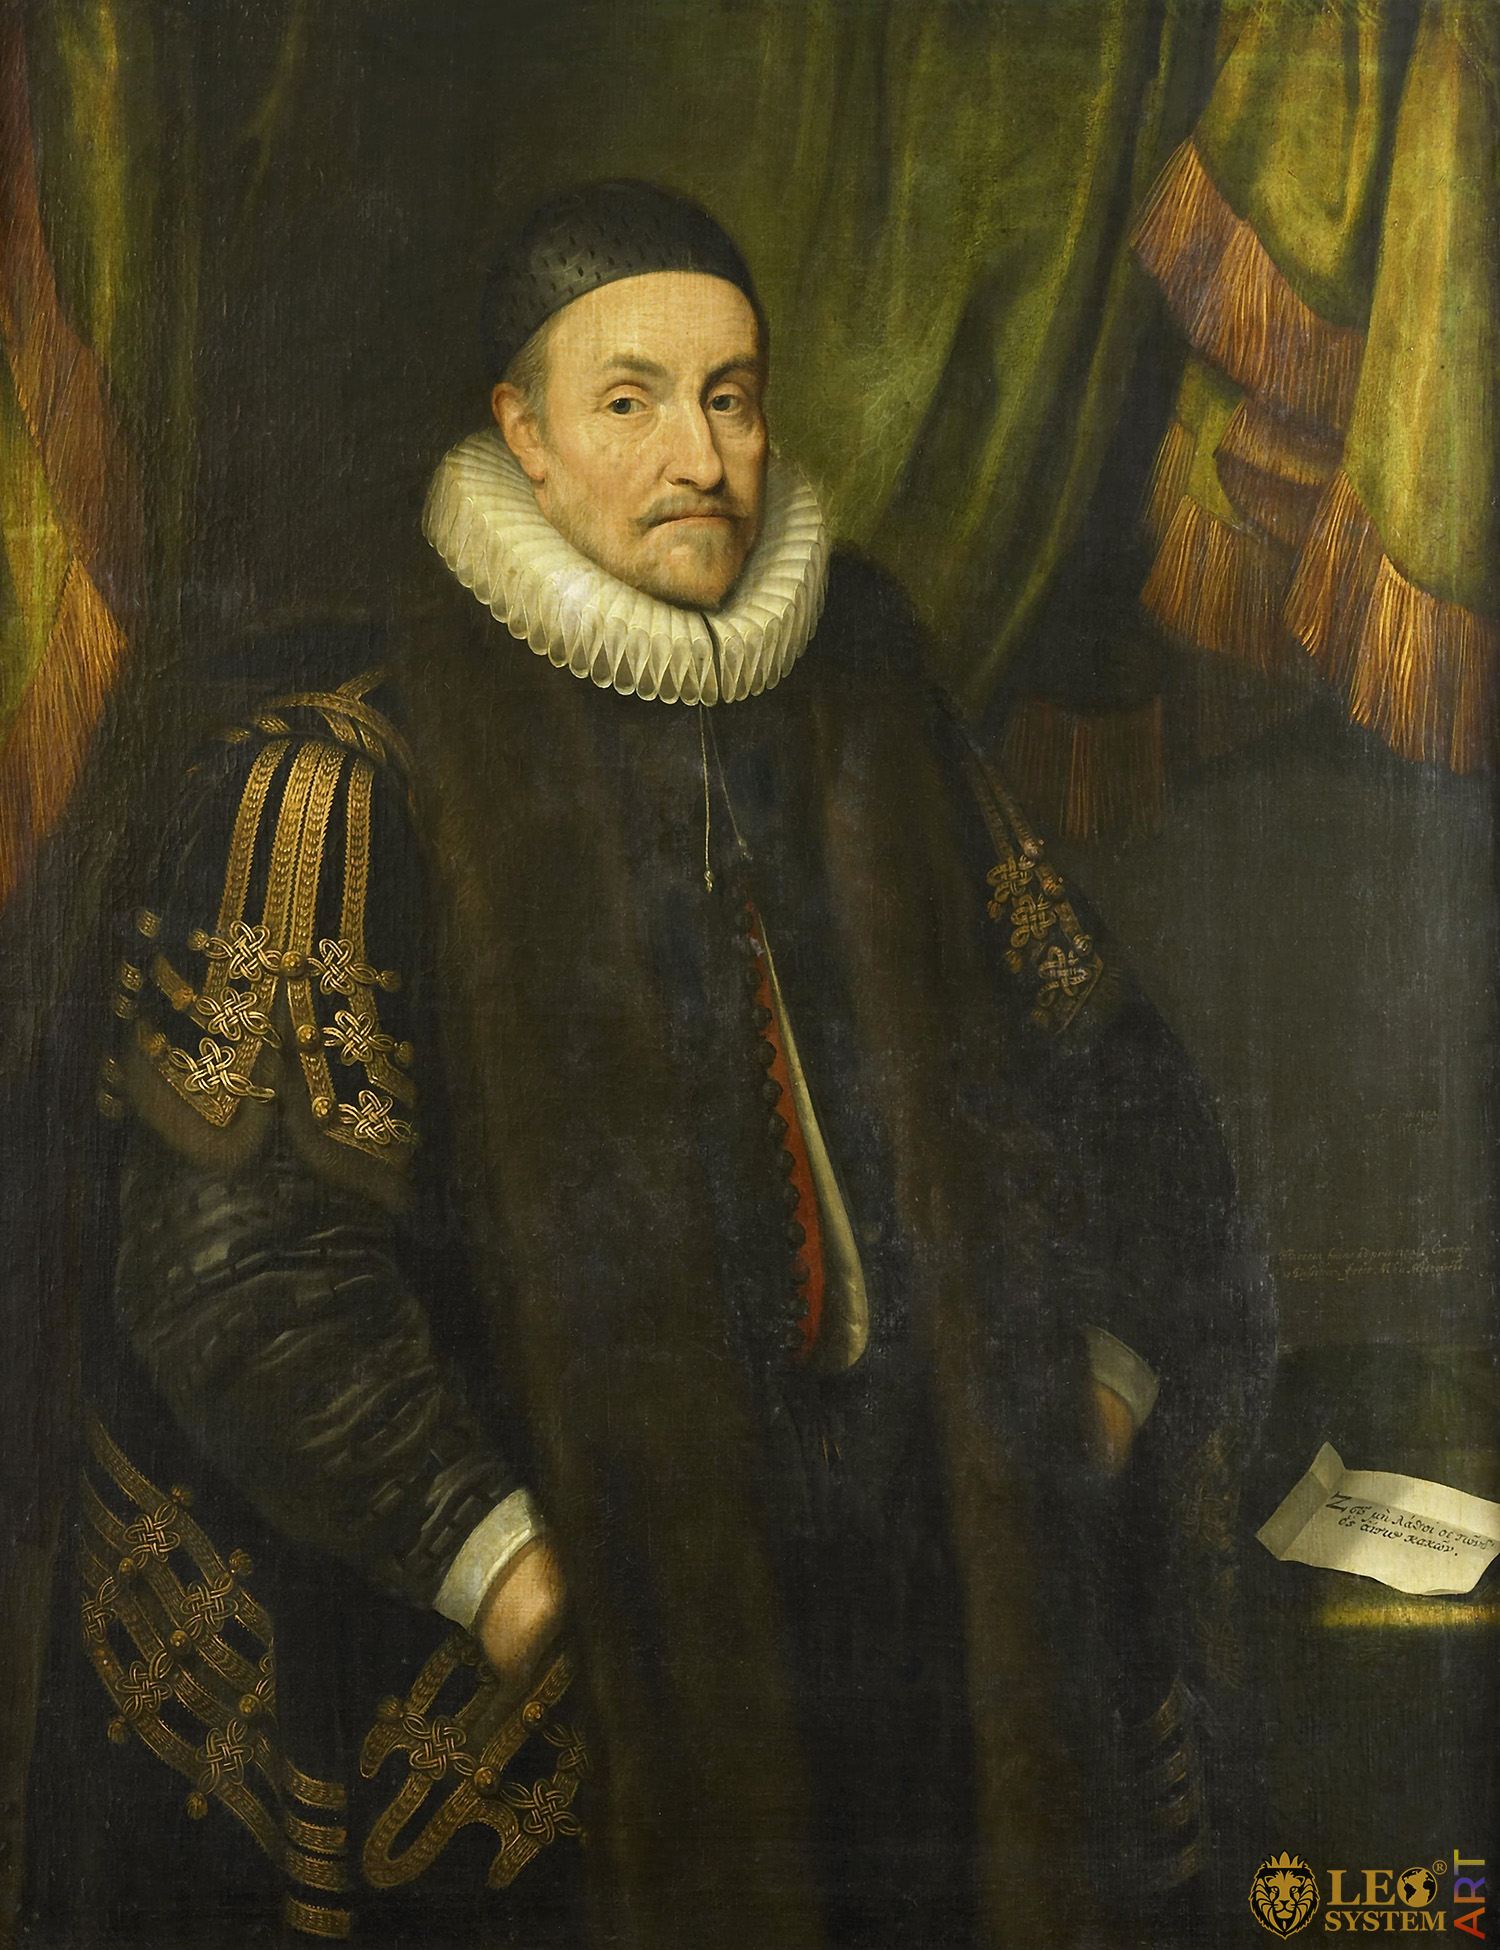 Portrait of William I, Prince of Orange, Painter: Michiel Jansz van Mierevelt, 1632, Dutch Painting